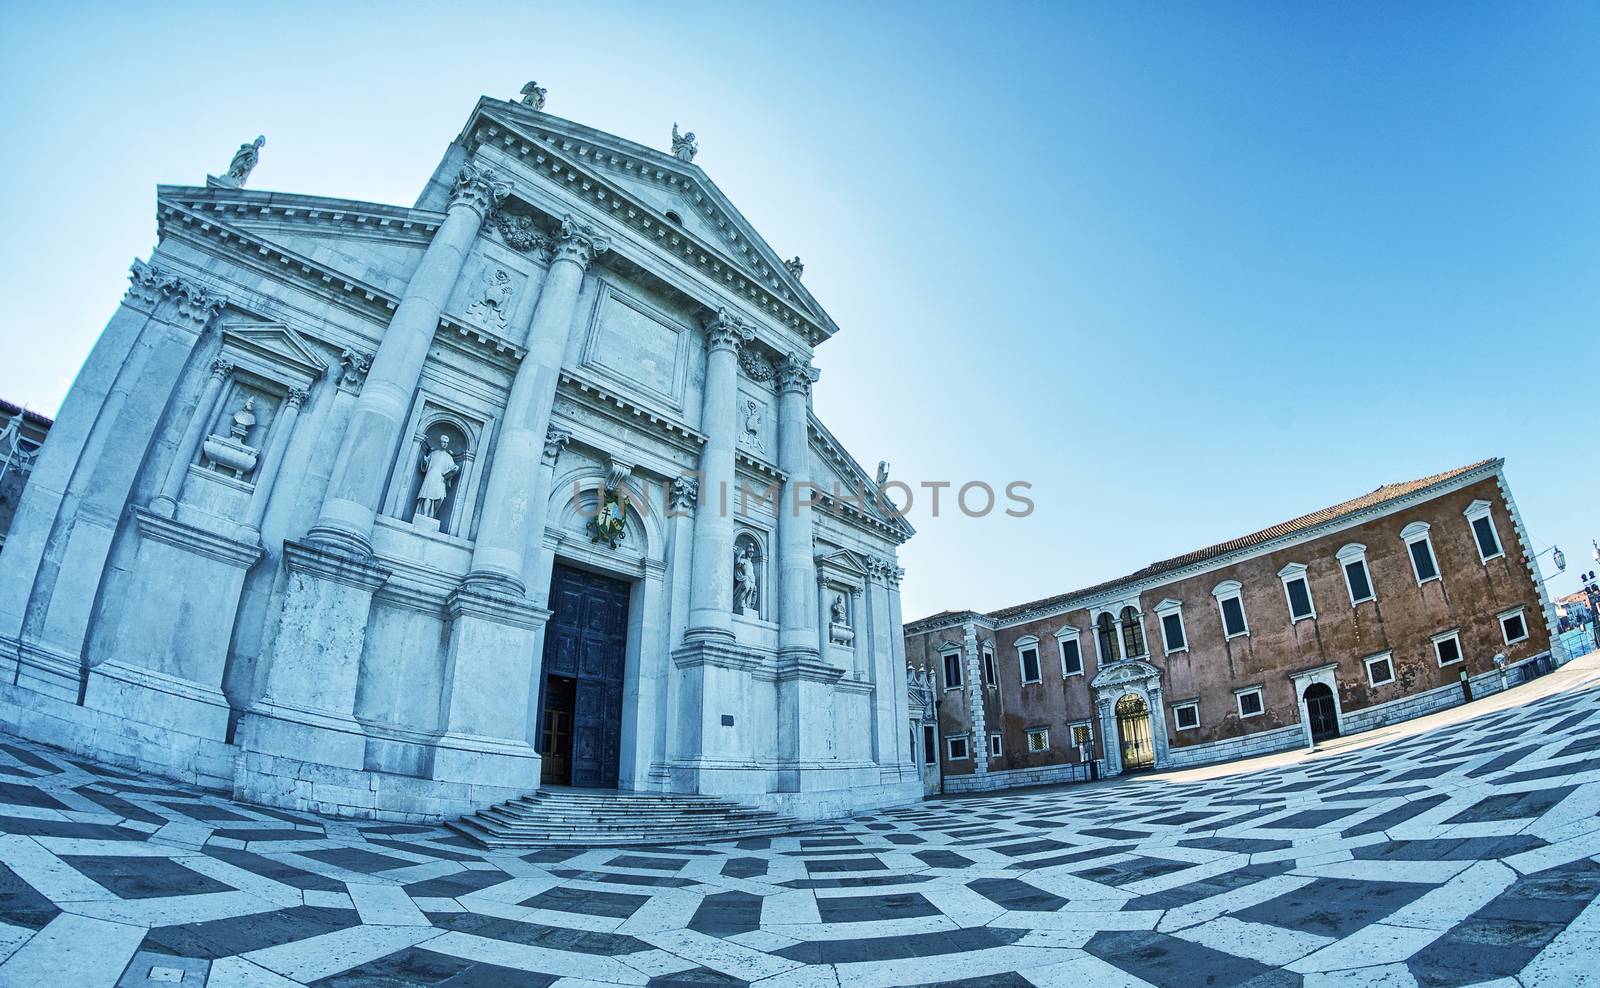 Basilica of Santa Maria della Salute in Venice.